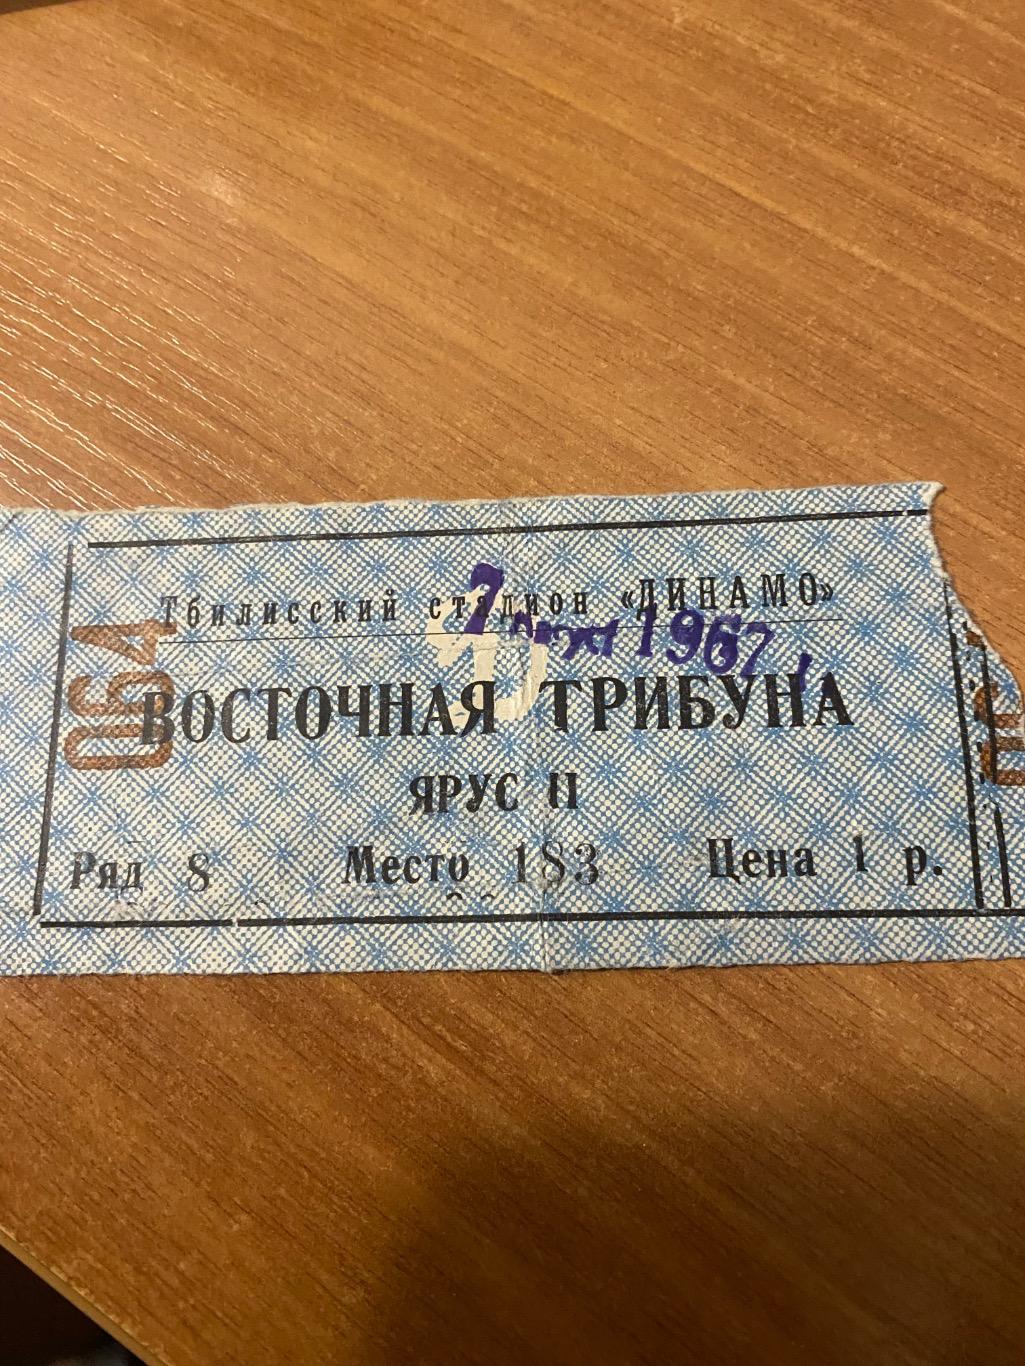 Динамо Тбилиси тб - зенит Ленинград санкт- Петербург 1967